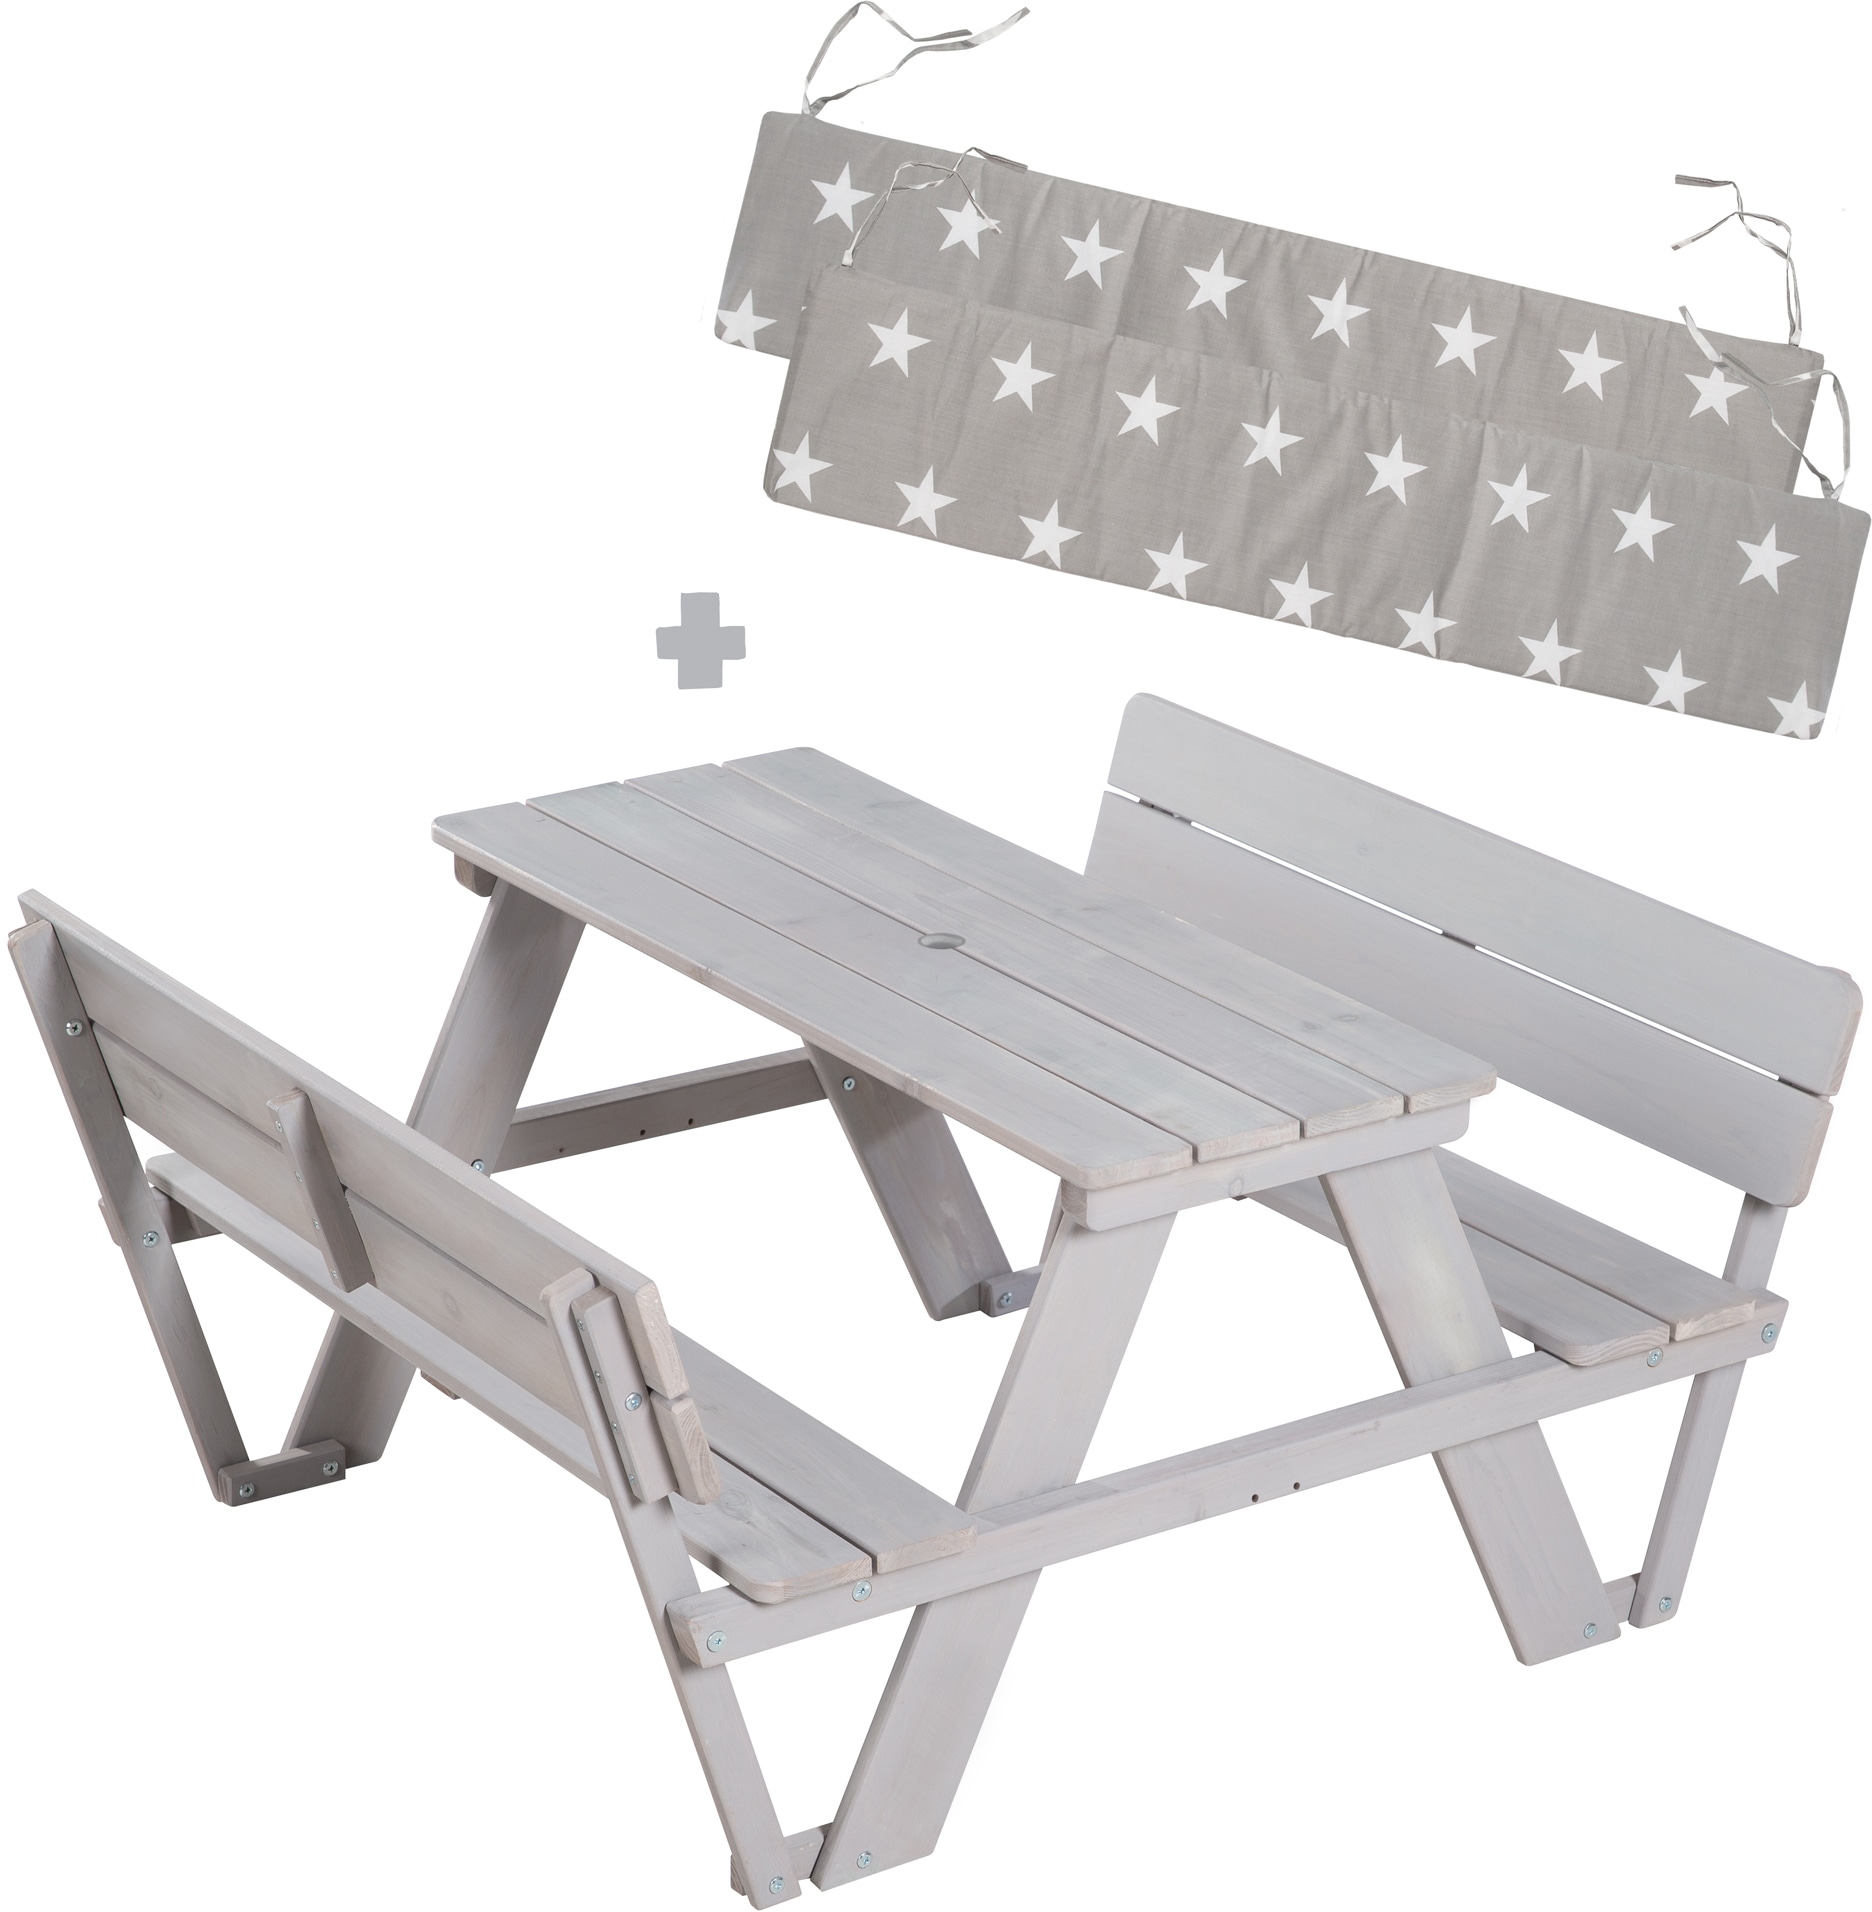 Kindersitzgruppe »Picknick Outdoor StarsÂ« Â»Little mit roba® +, acheter 4 Grau«, for Lehne; Sitzauflagen (Set), inklusive